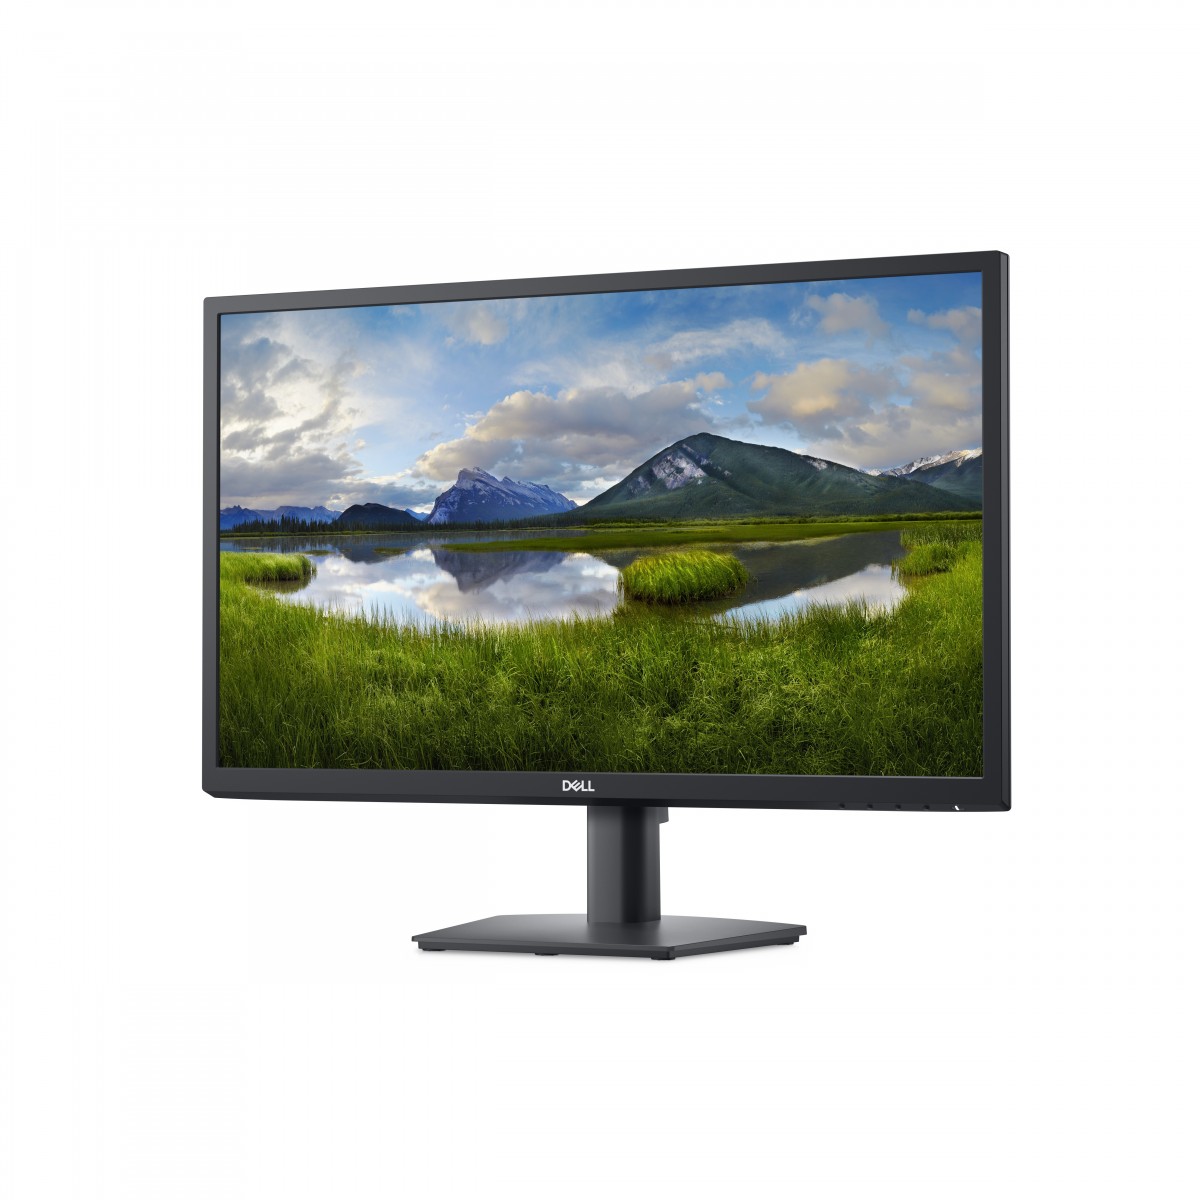 Dell 24 Monitor - E2422HN - 60.5 cm 23.8 - Flat Screen